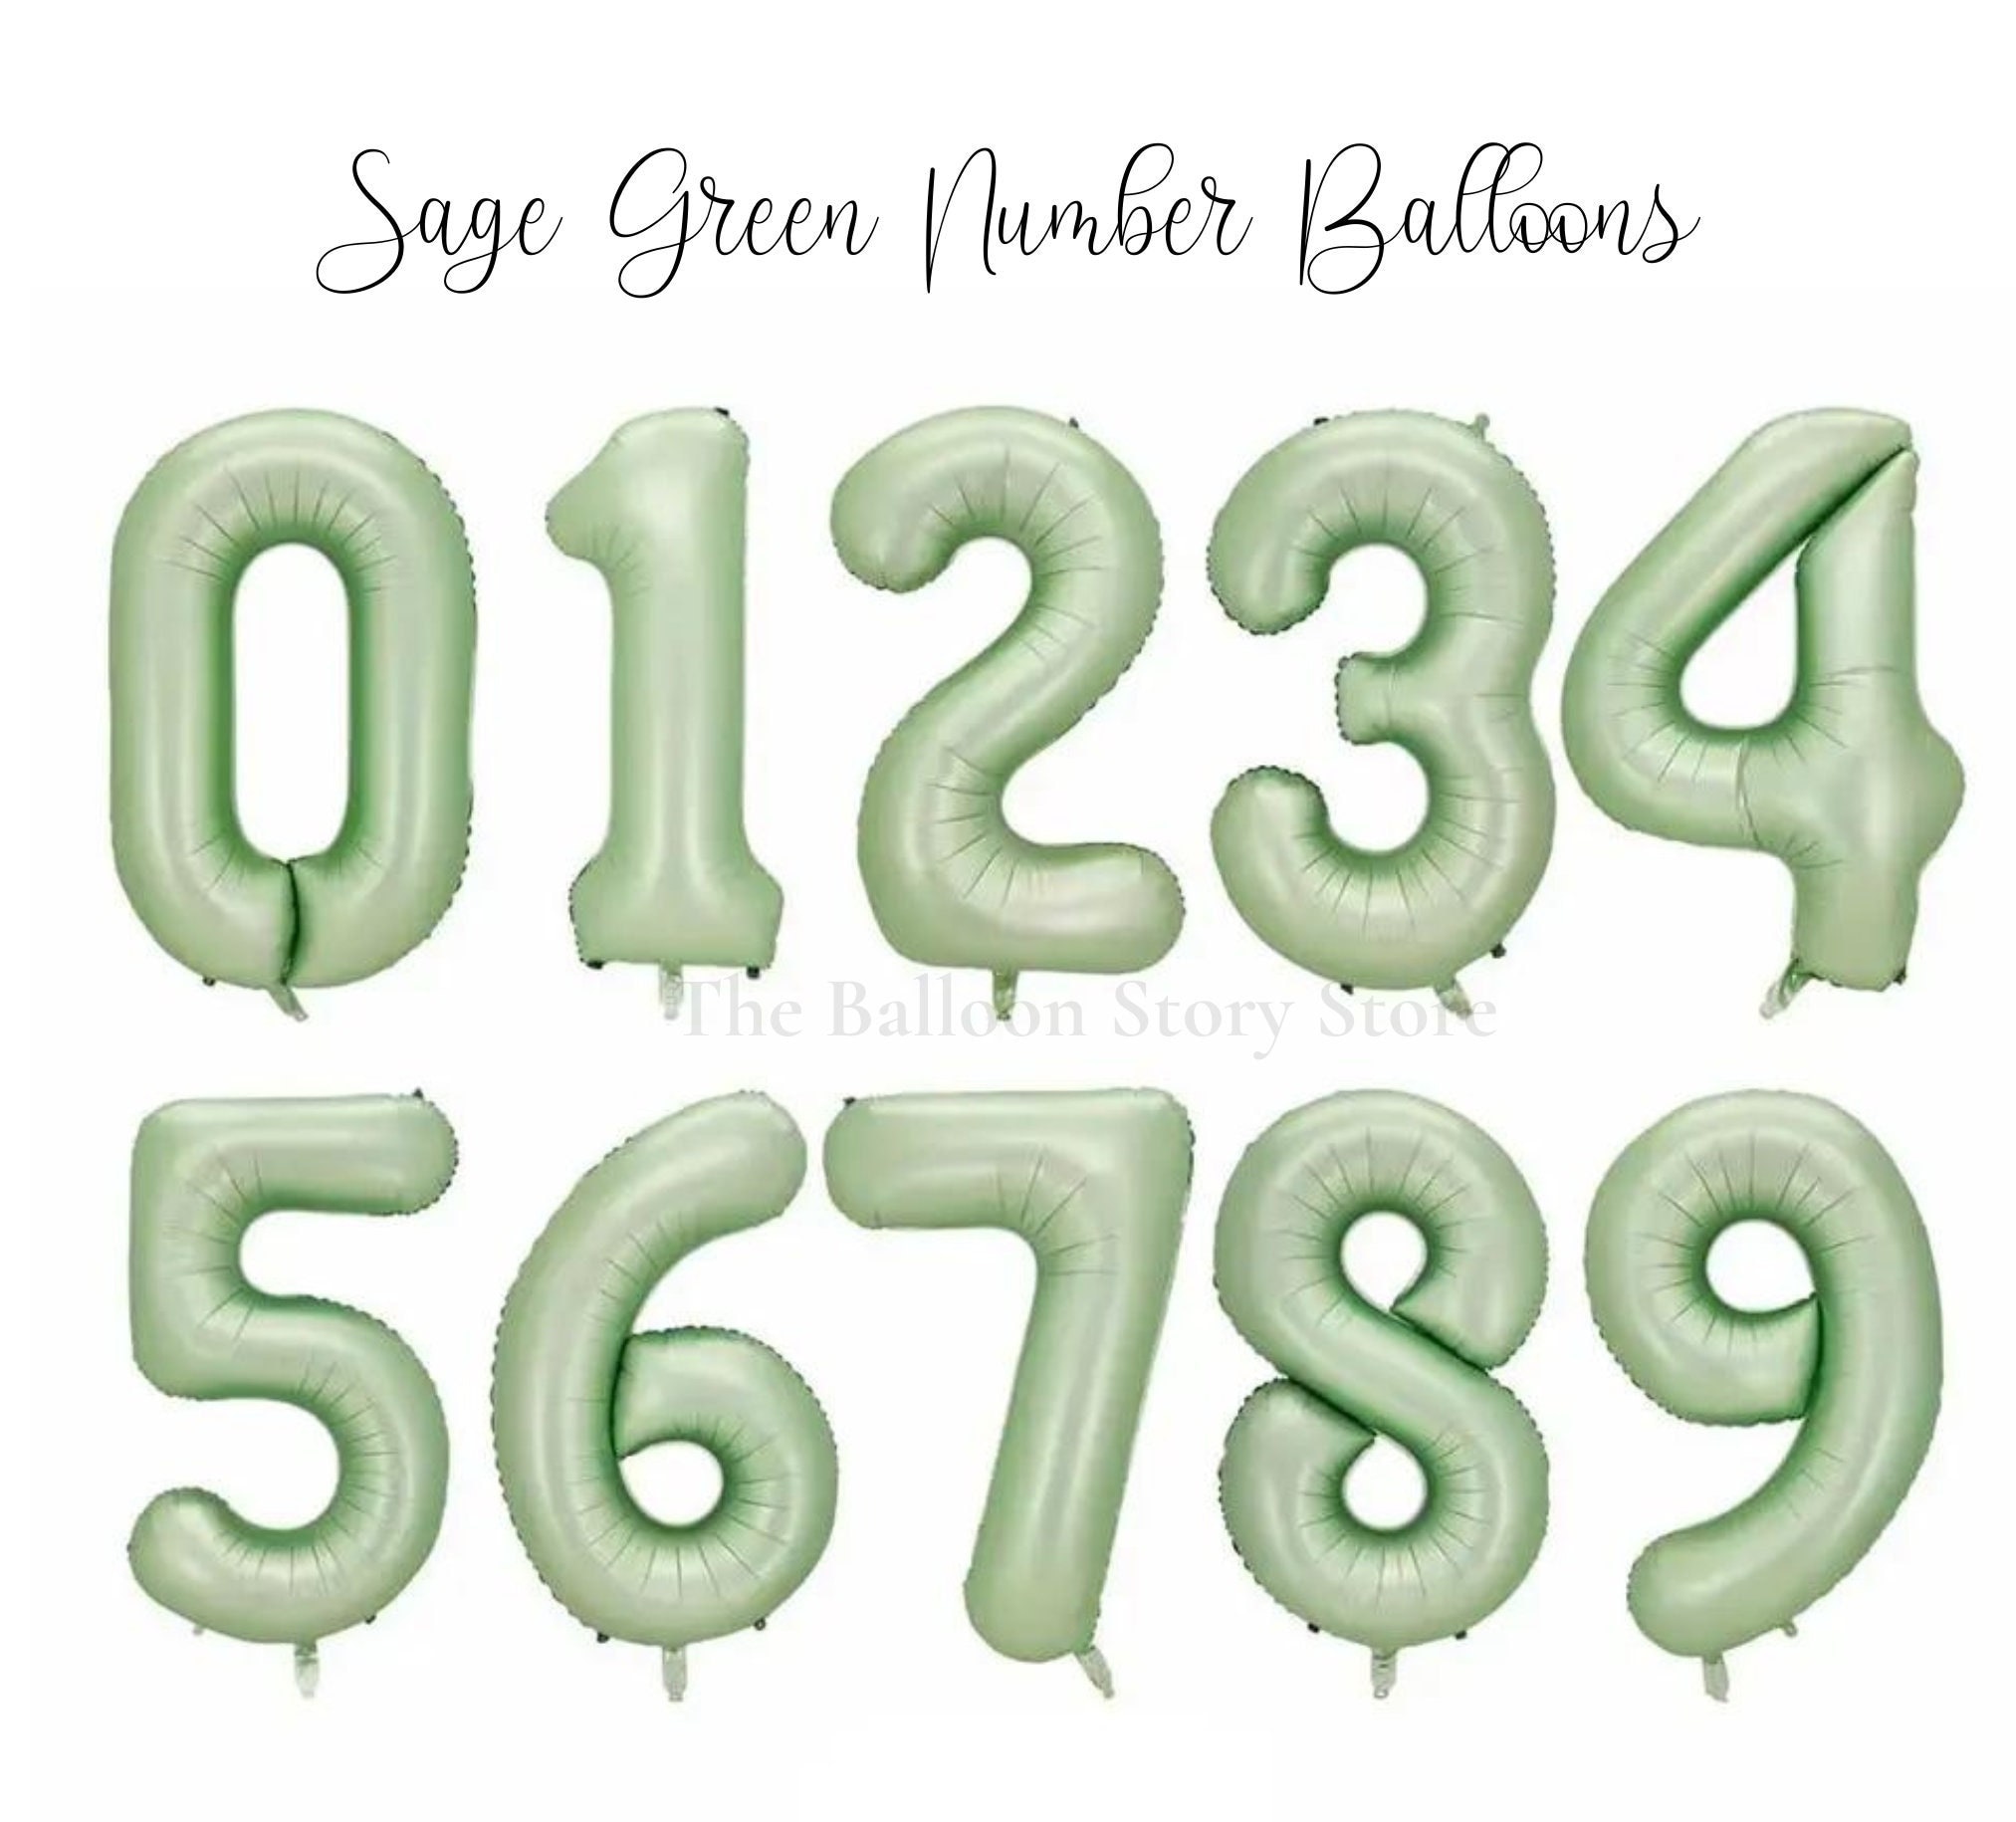 Ballon NUMÉRO vert fluo Ballon chiffre géant vert lime fluo Ballon  aluminium vert fluo 40 Balloons Ballon d'anniversaire néon géant -   Canada